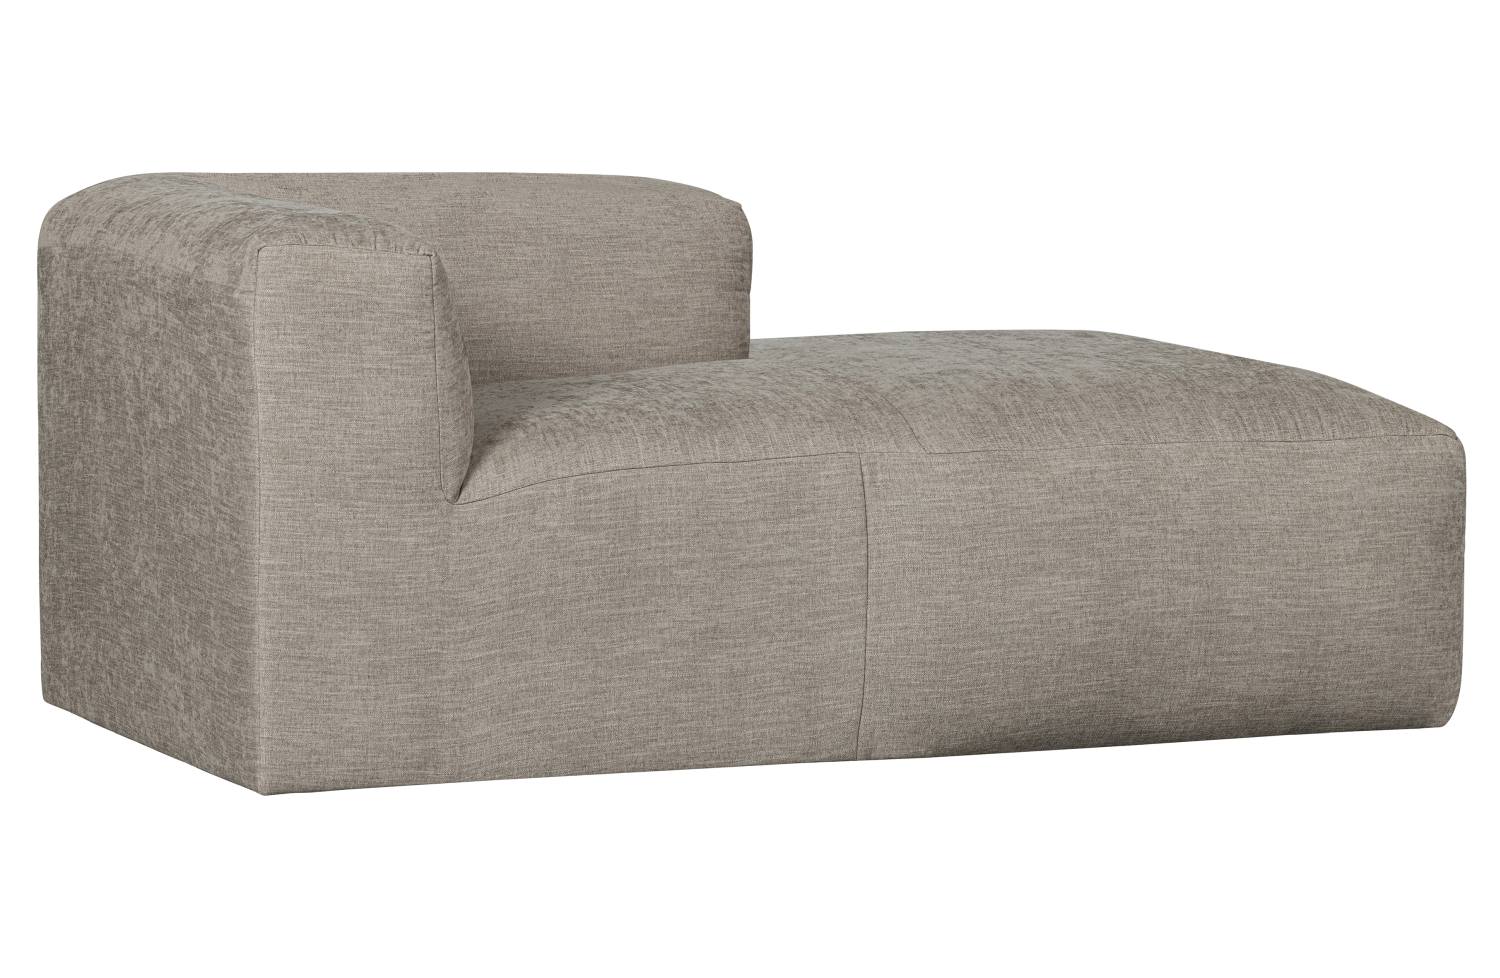 Das Modulsofa Yent als Chaise-Longue überzeugt mit seinem modernen Design. Gefertigt wurde es aus Webstoff, welcher einen hellgrauen Farbton besitzt. Das Sofa ist in der Ausführung Links. Die Sitzhöhe des Sofas beträgt 47 cm.